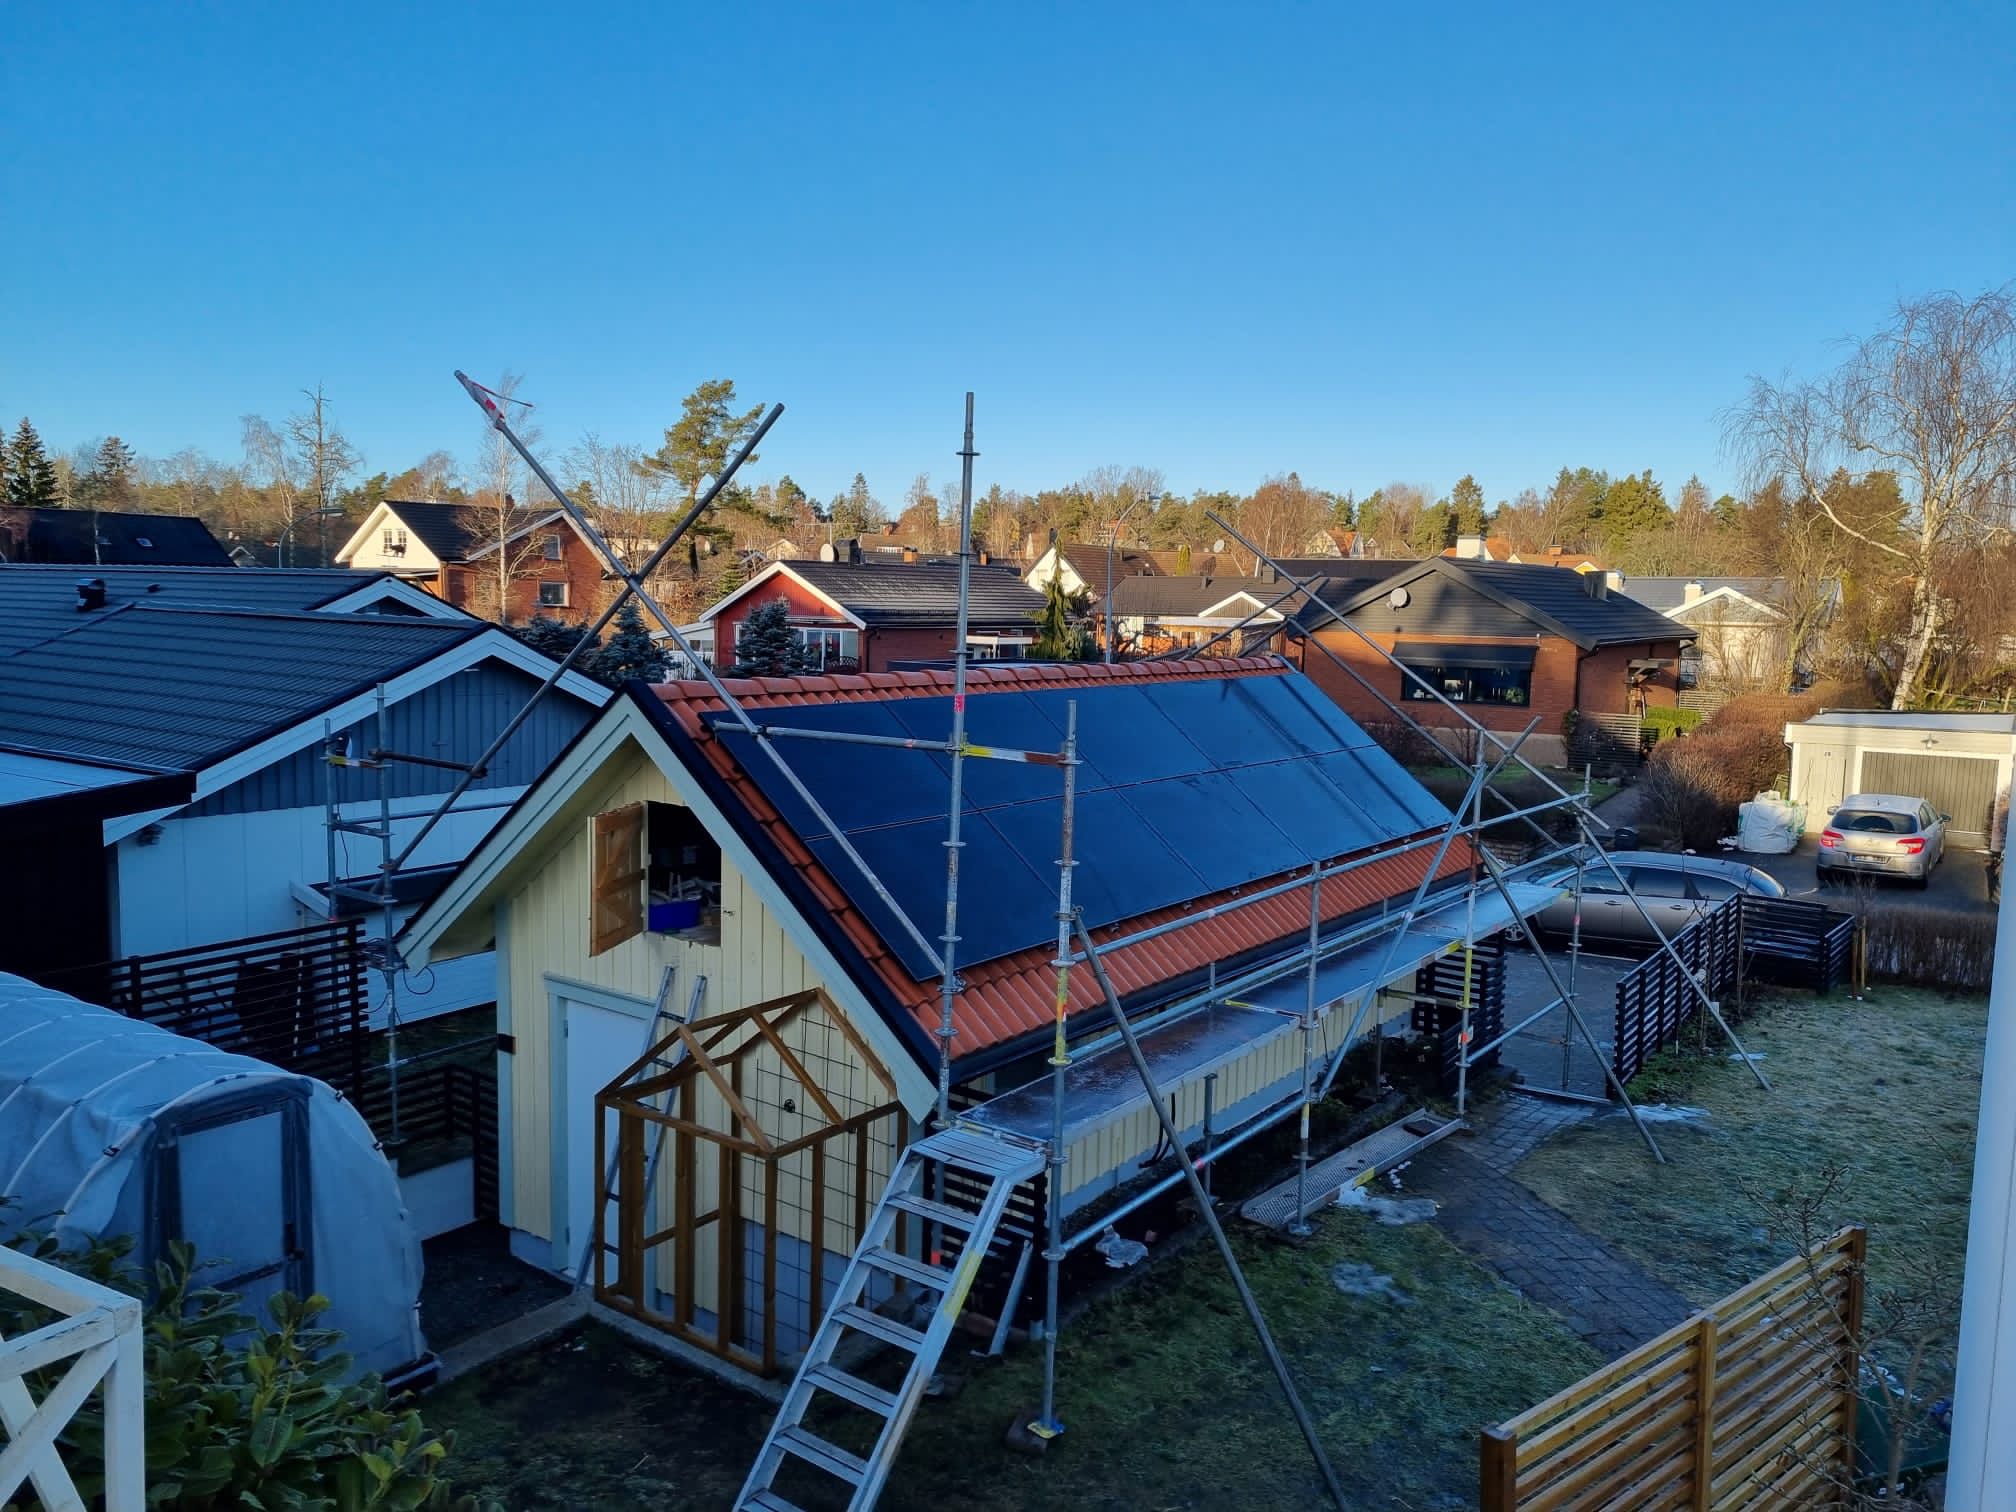 Solar Panel Project in Hudinge